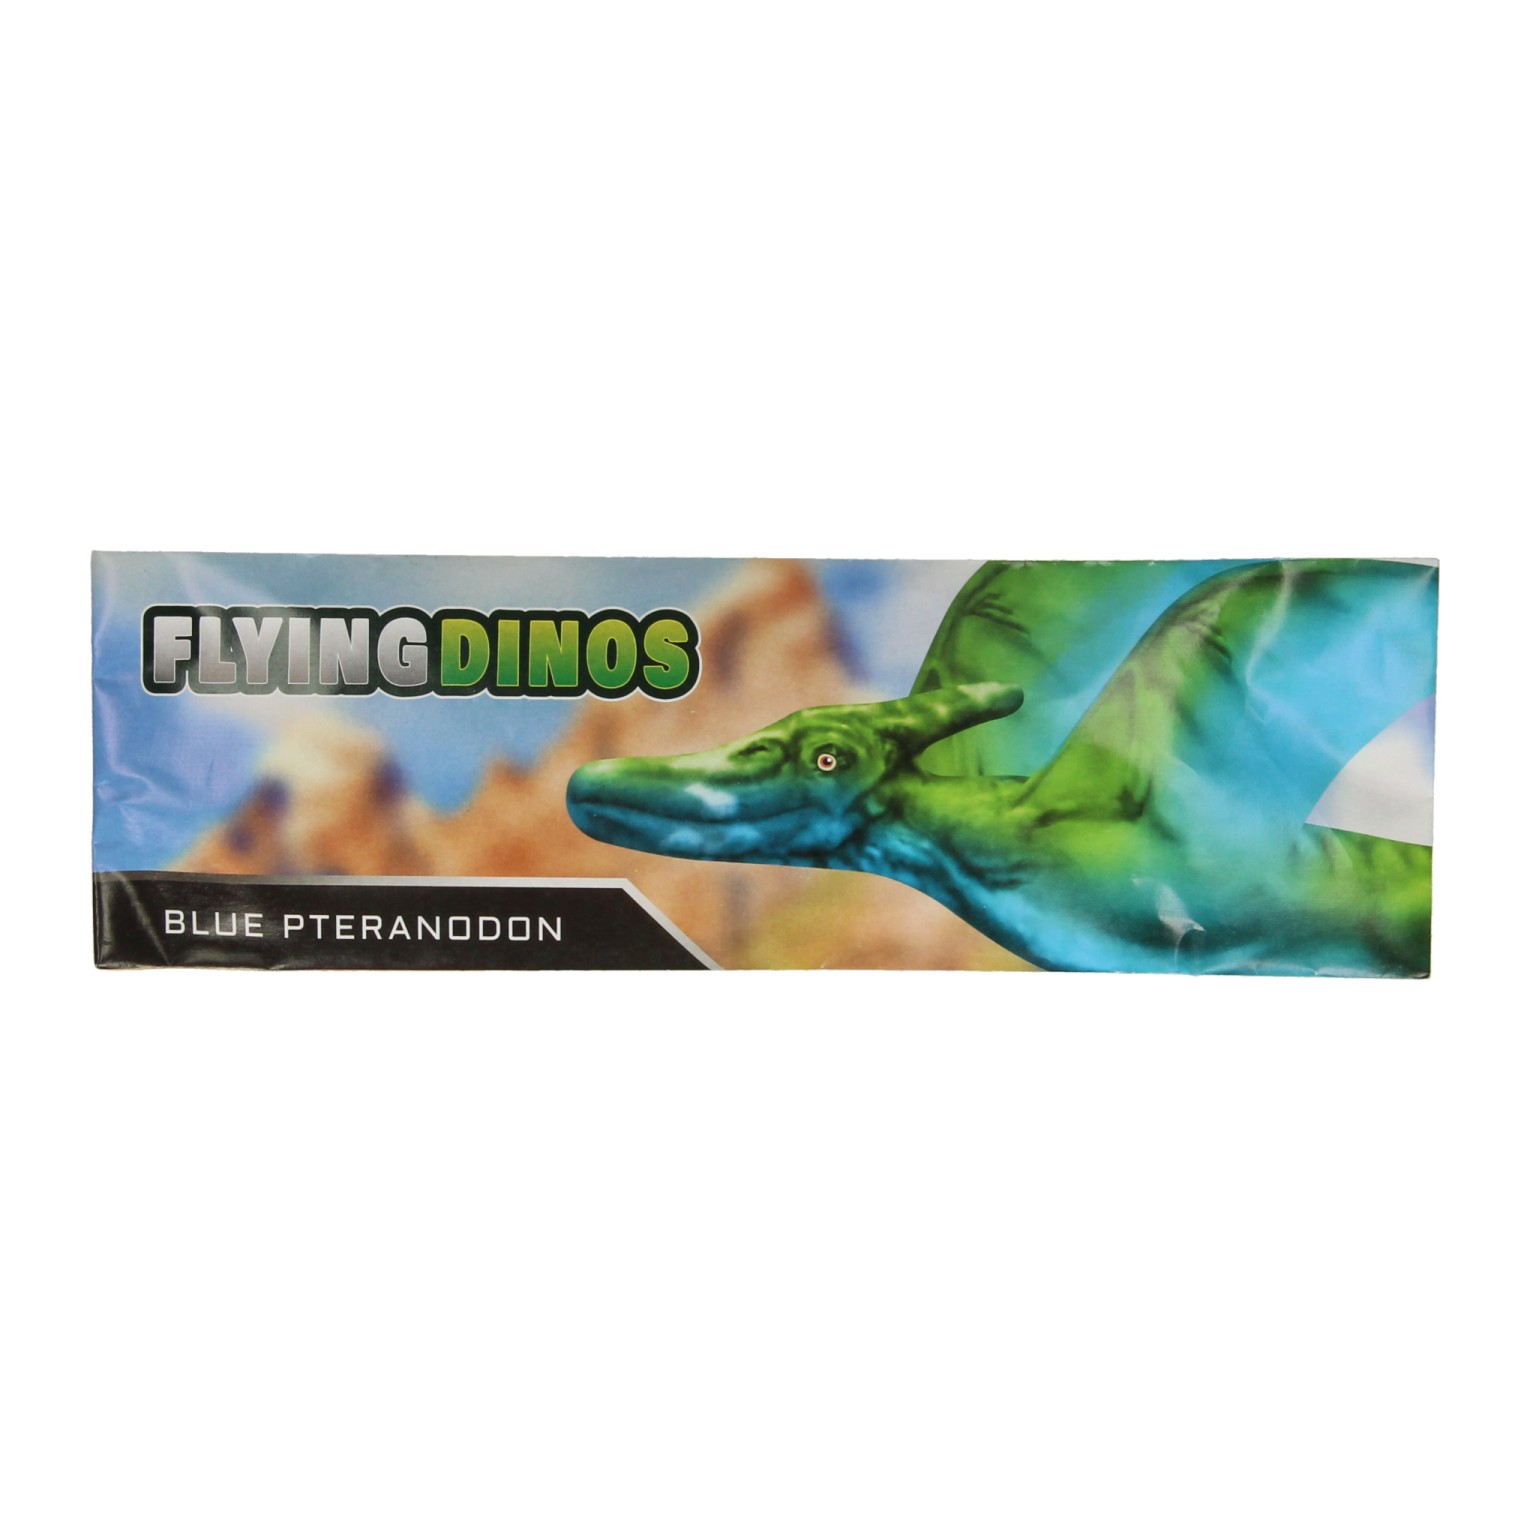 Dinosaurus EVA Vliegtuigje Foam